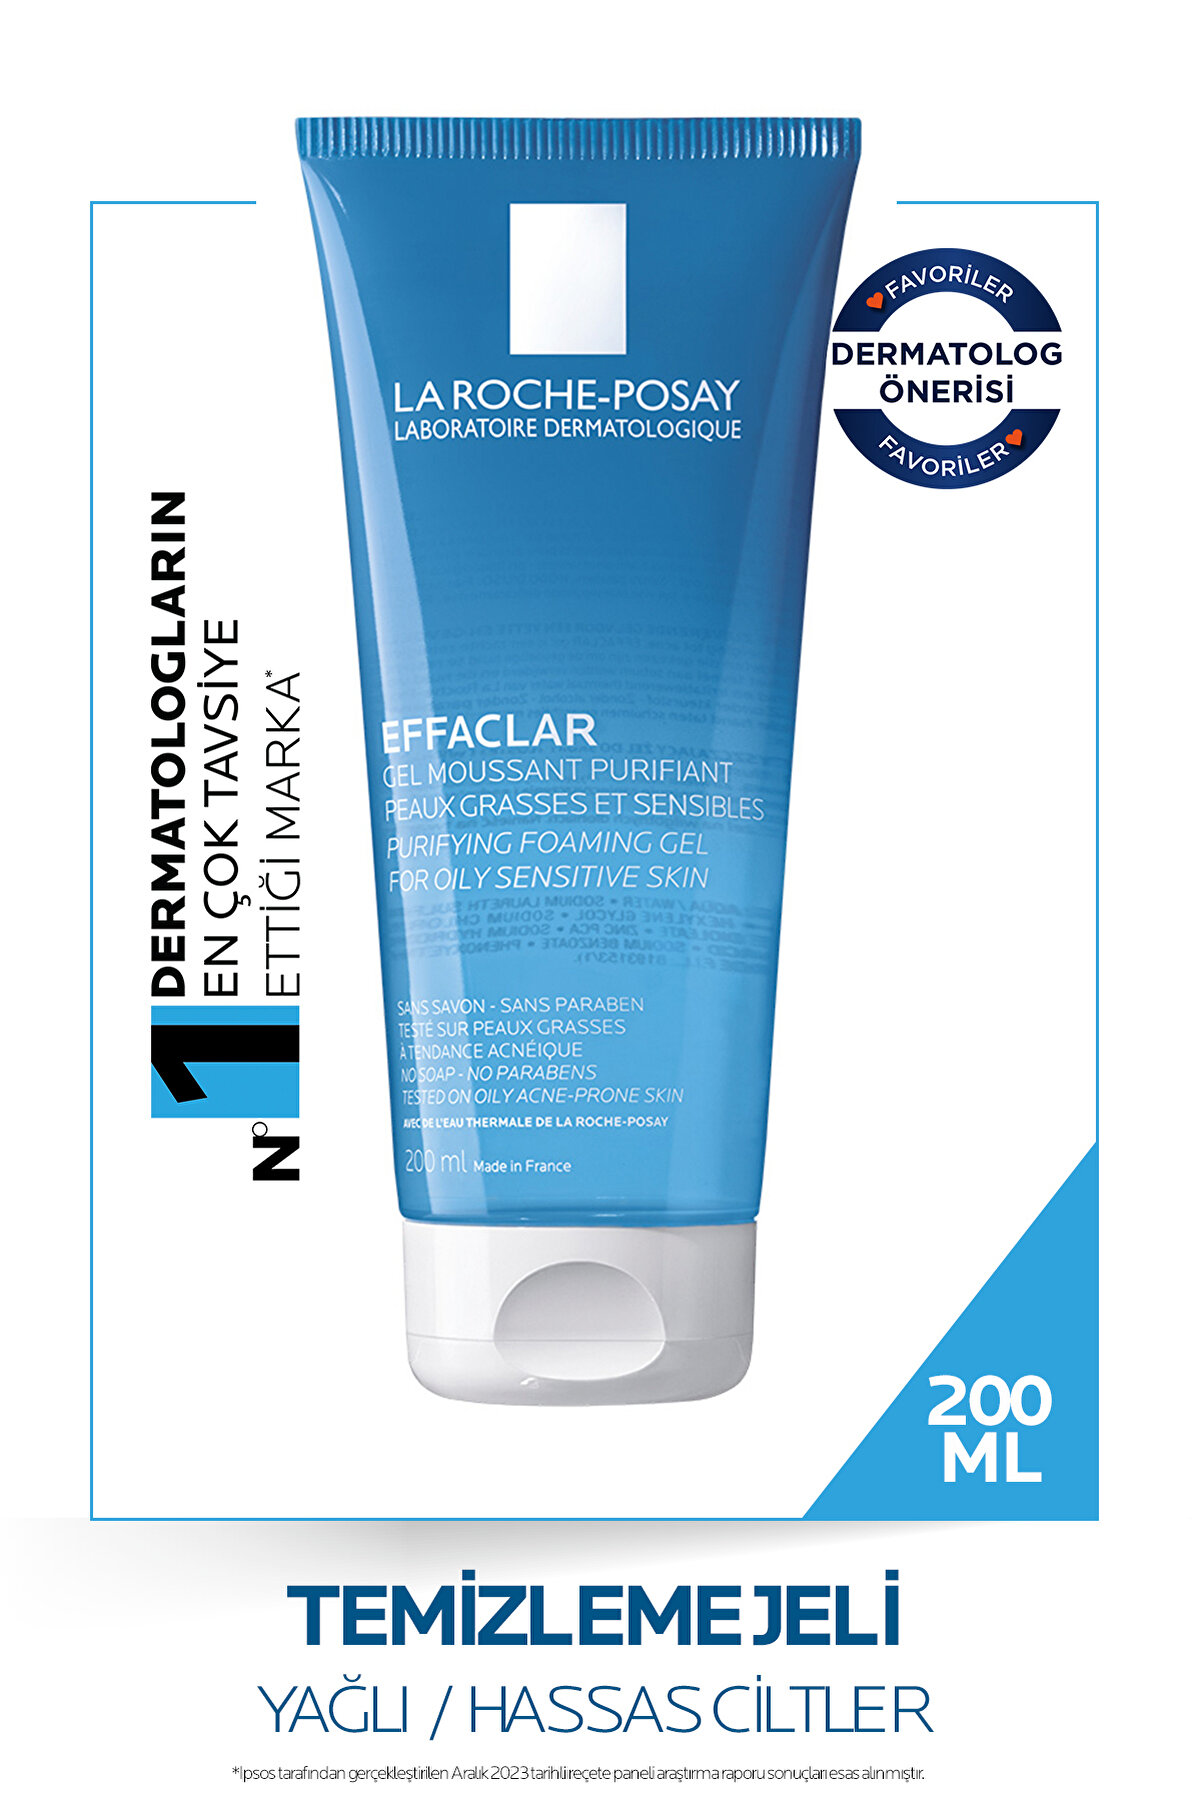 La Roche Posay Effaclar Gel Akne Eğilimli Yağlı Ciltler Için Sabun Içermeyen Temizleyici Jel 200ml